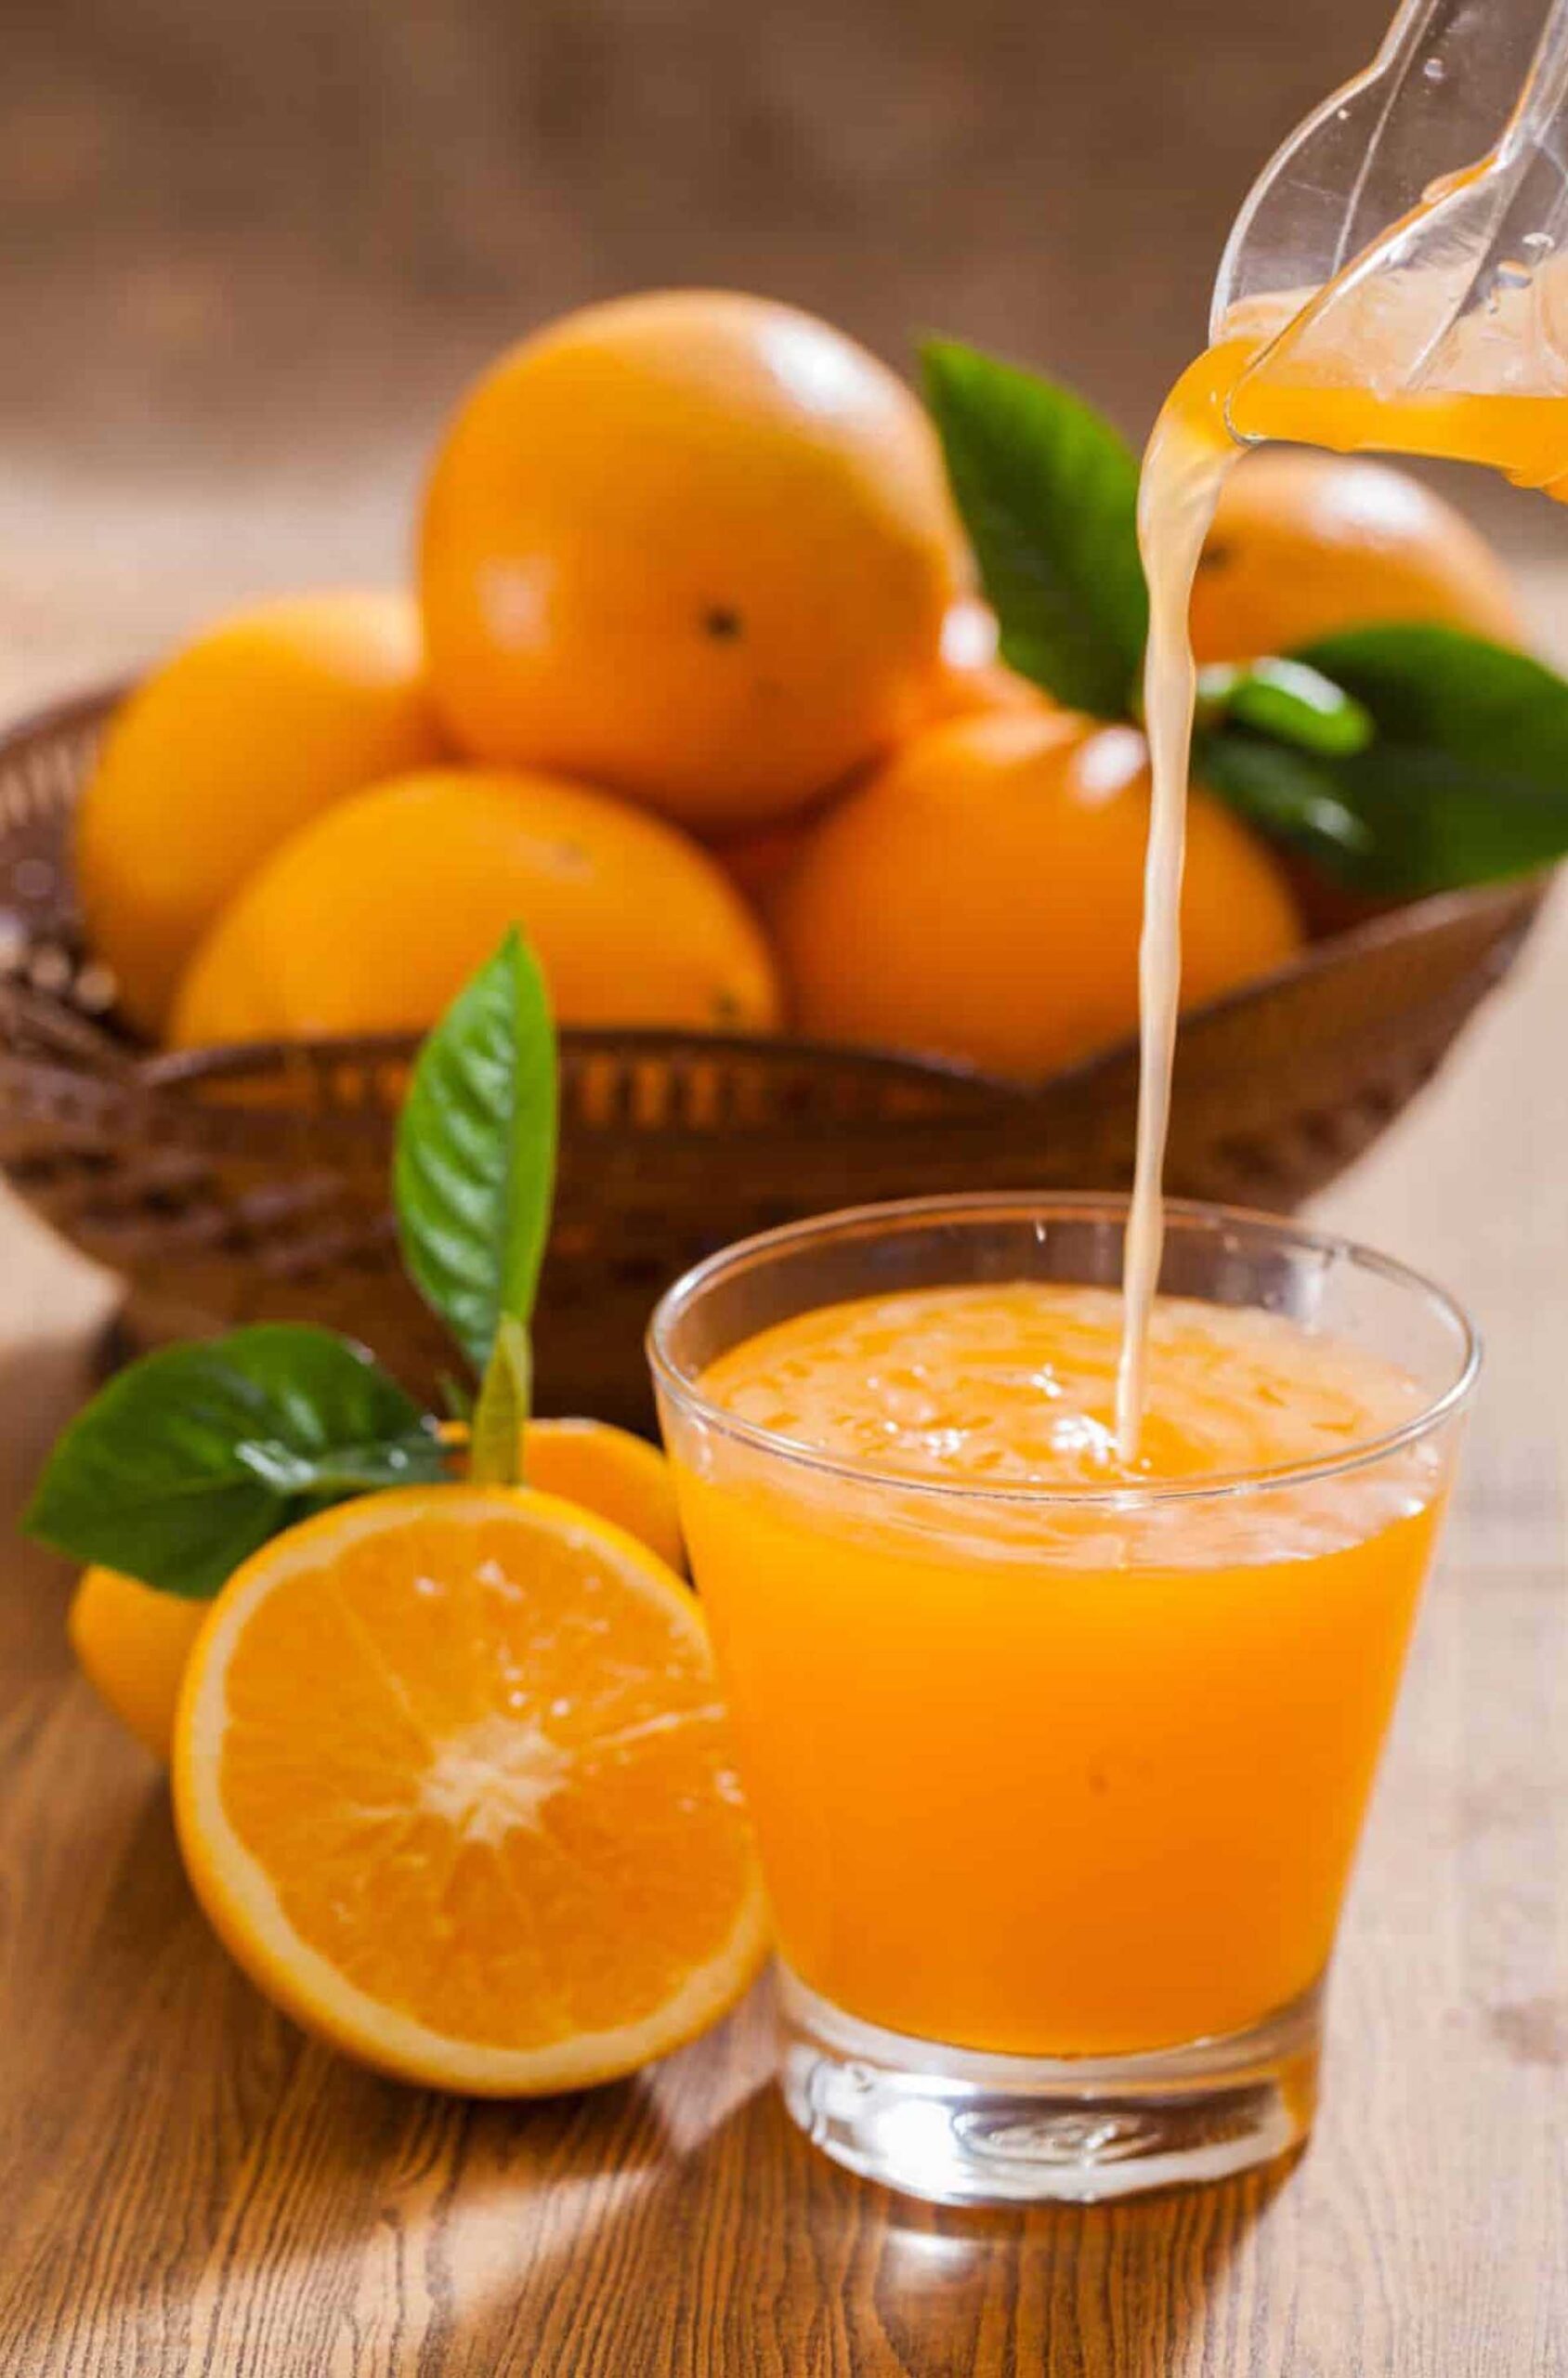 จับปากีฯ แทงเพื่อนคนงานต่างด้าวดับ “แค้นฉกน้ำส้ม” ที่เตรียมไว้ดื่มช่วงละศีลอด